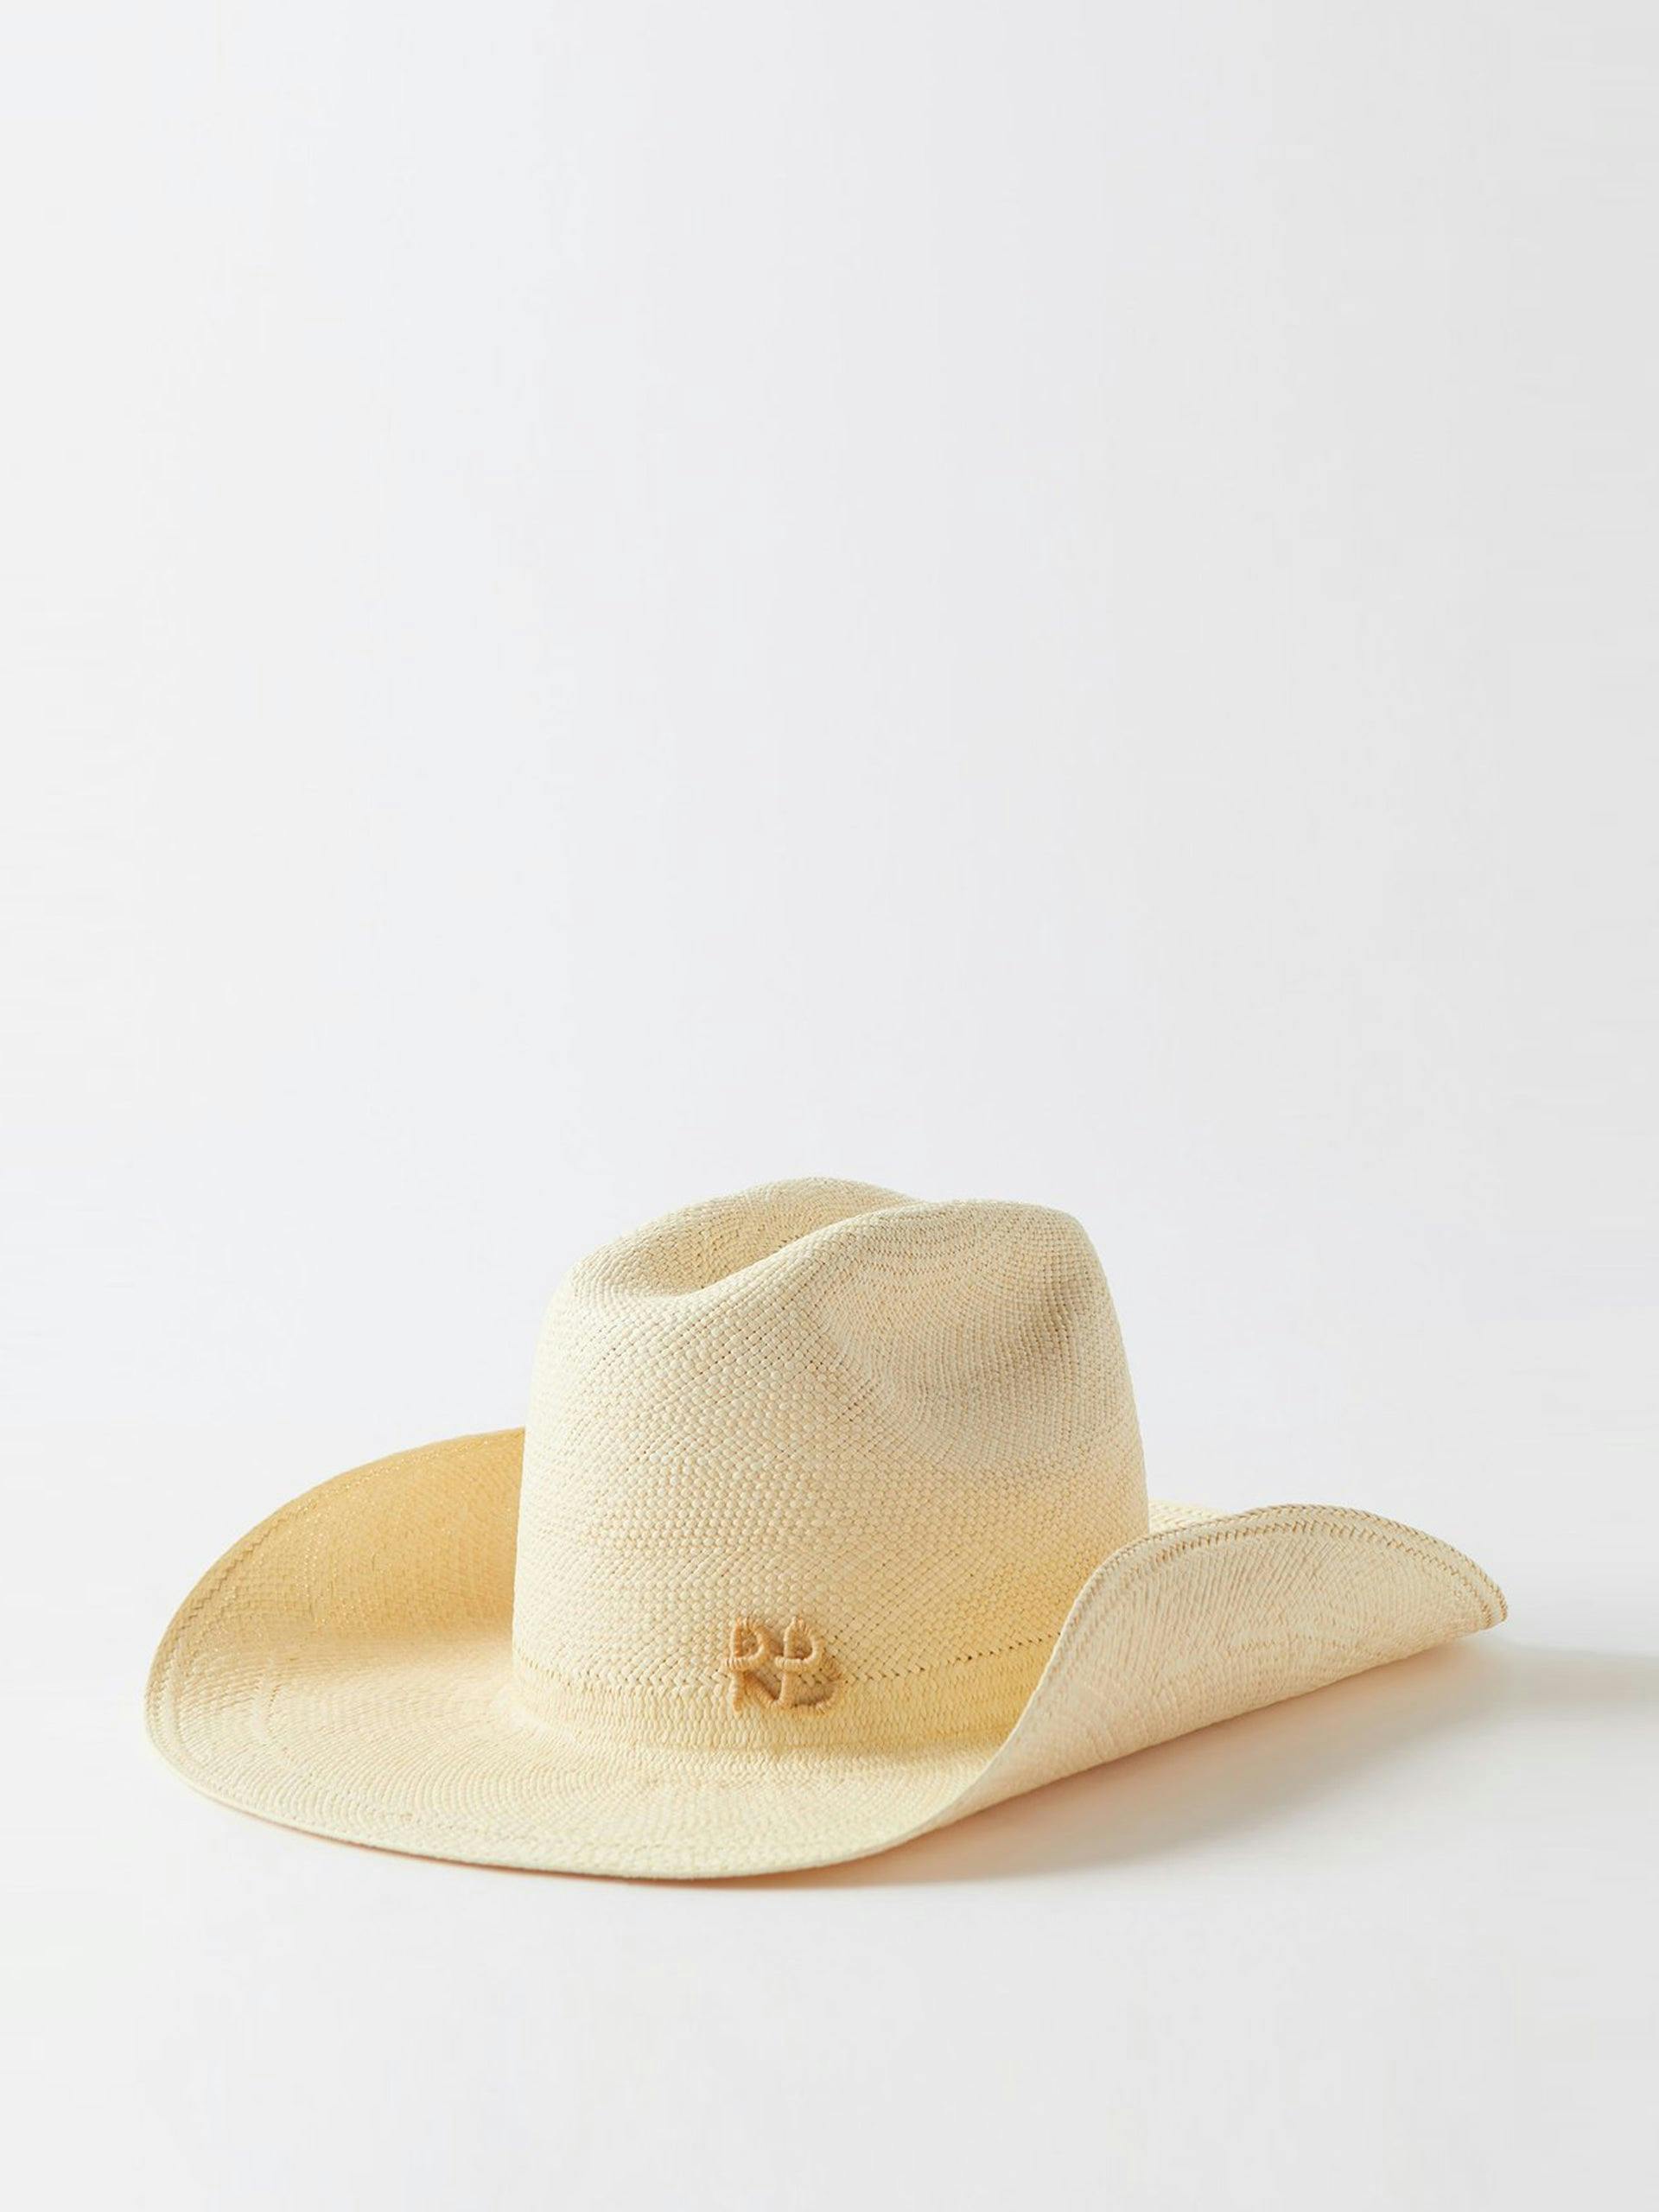 Beige straw cowboy hat